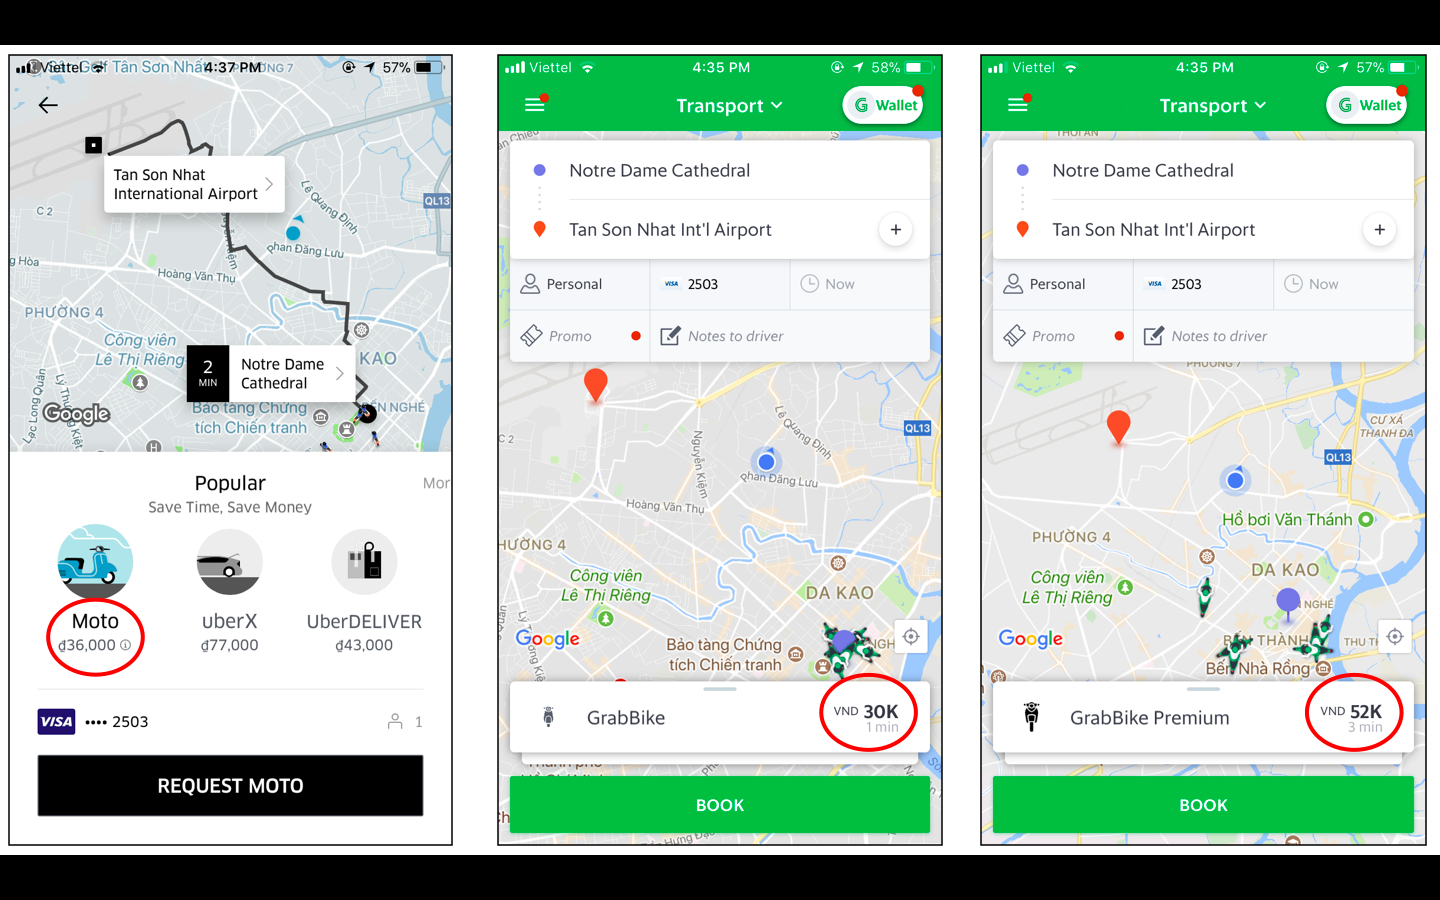 Fare comparison between UberMOTO, GrabBike and GrabBike Premium, November 3,0 2017. Photo: Tien Bui/Tuoi Tre News